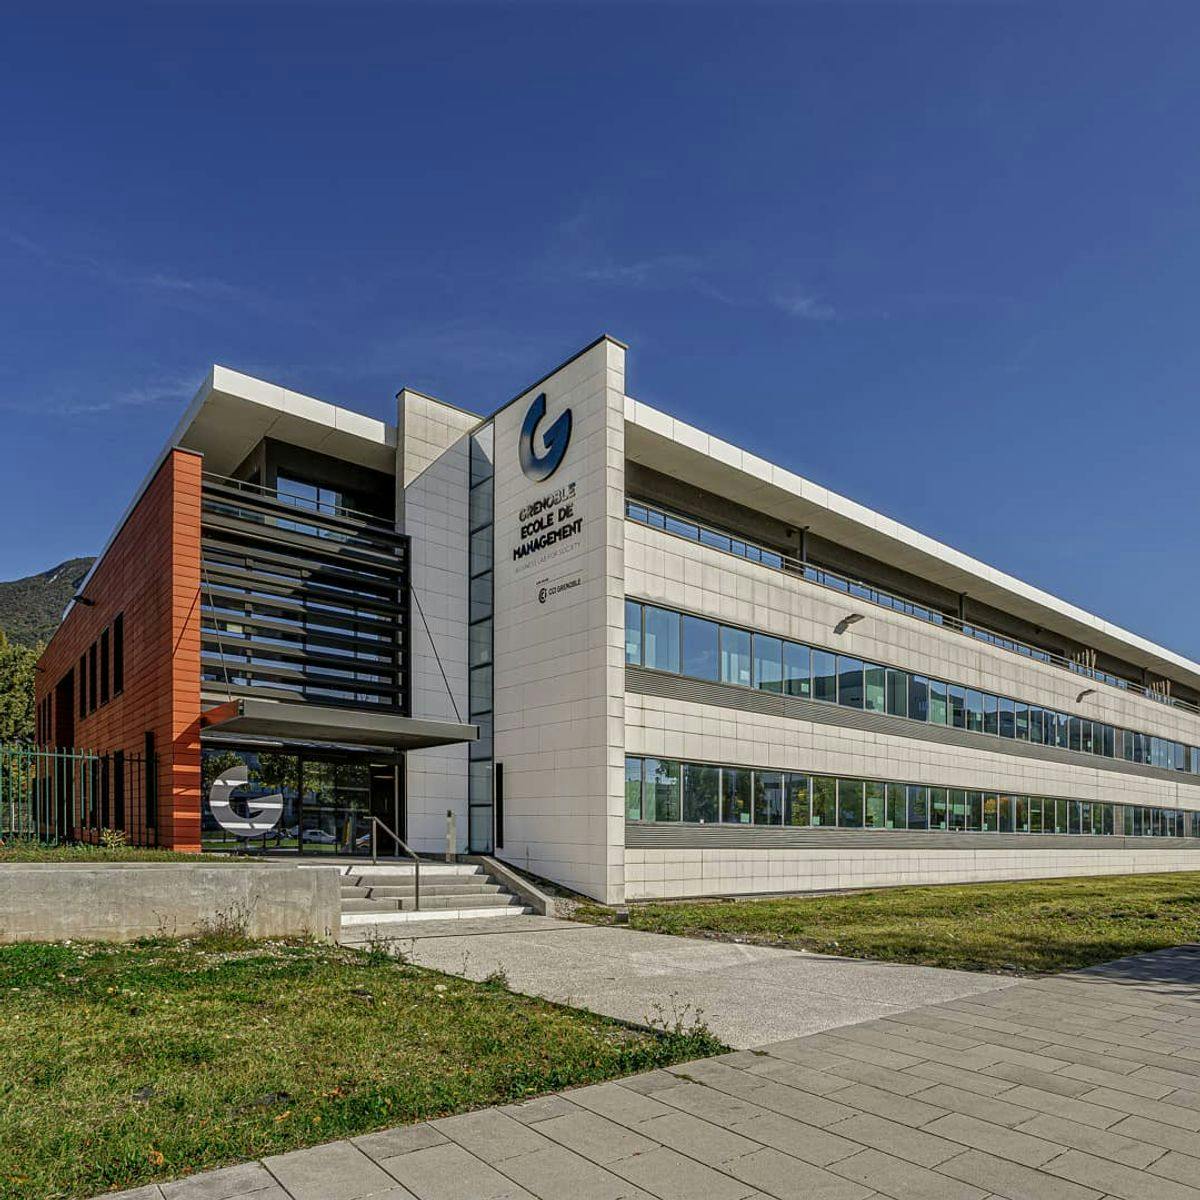 Campus Image of Grenoble Ecole de Management